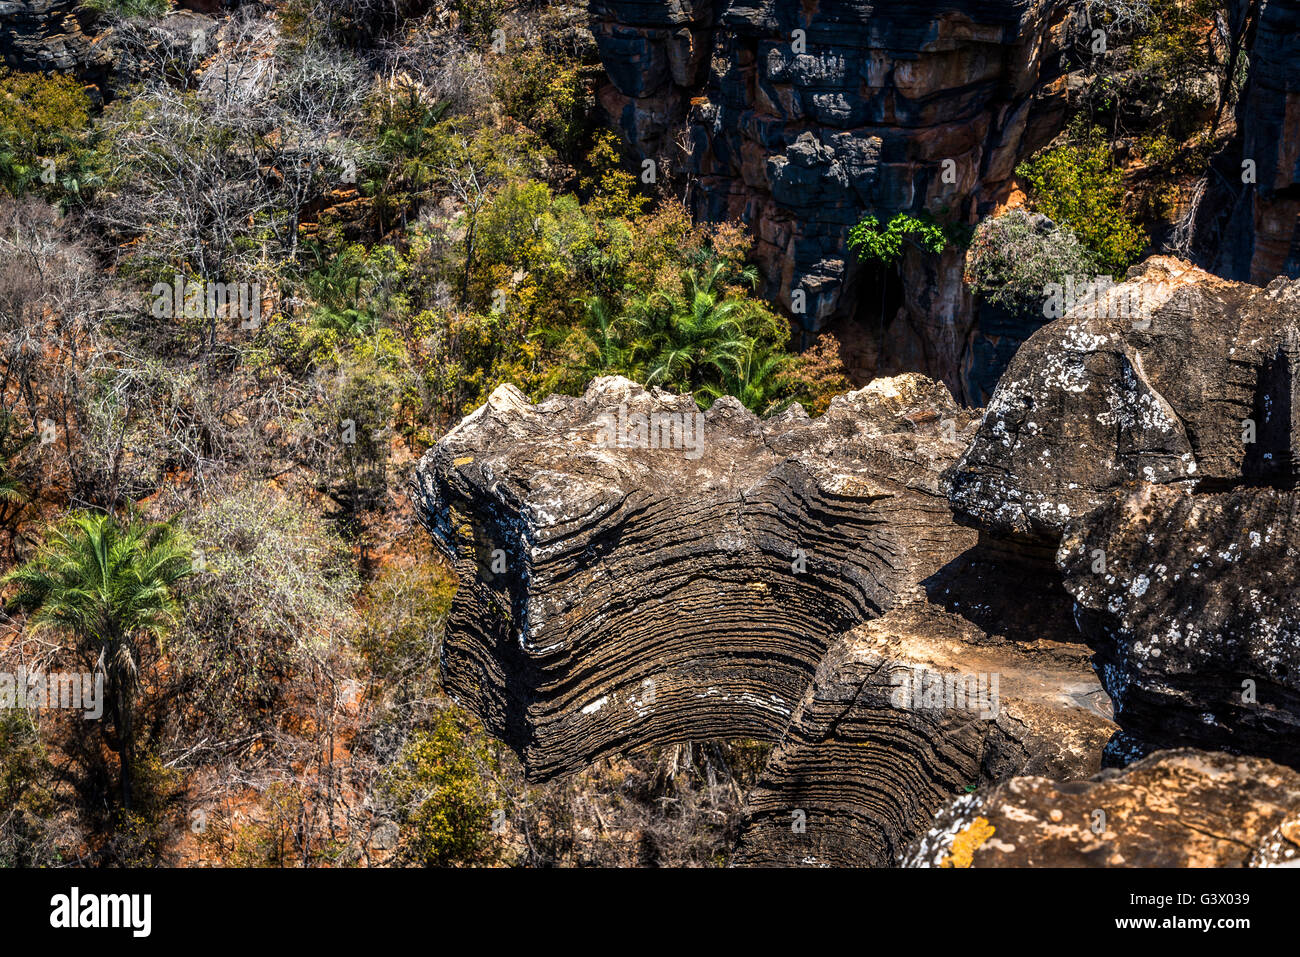 Lapa Doce Höhle von außen mit gefallenen Dach der Höhle - Dolina - Chapada Diamantina, Bahia, Brasilien Stockfoto